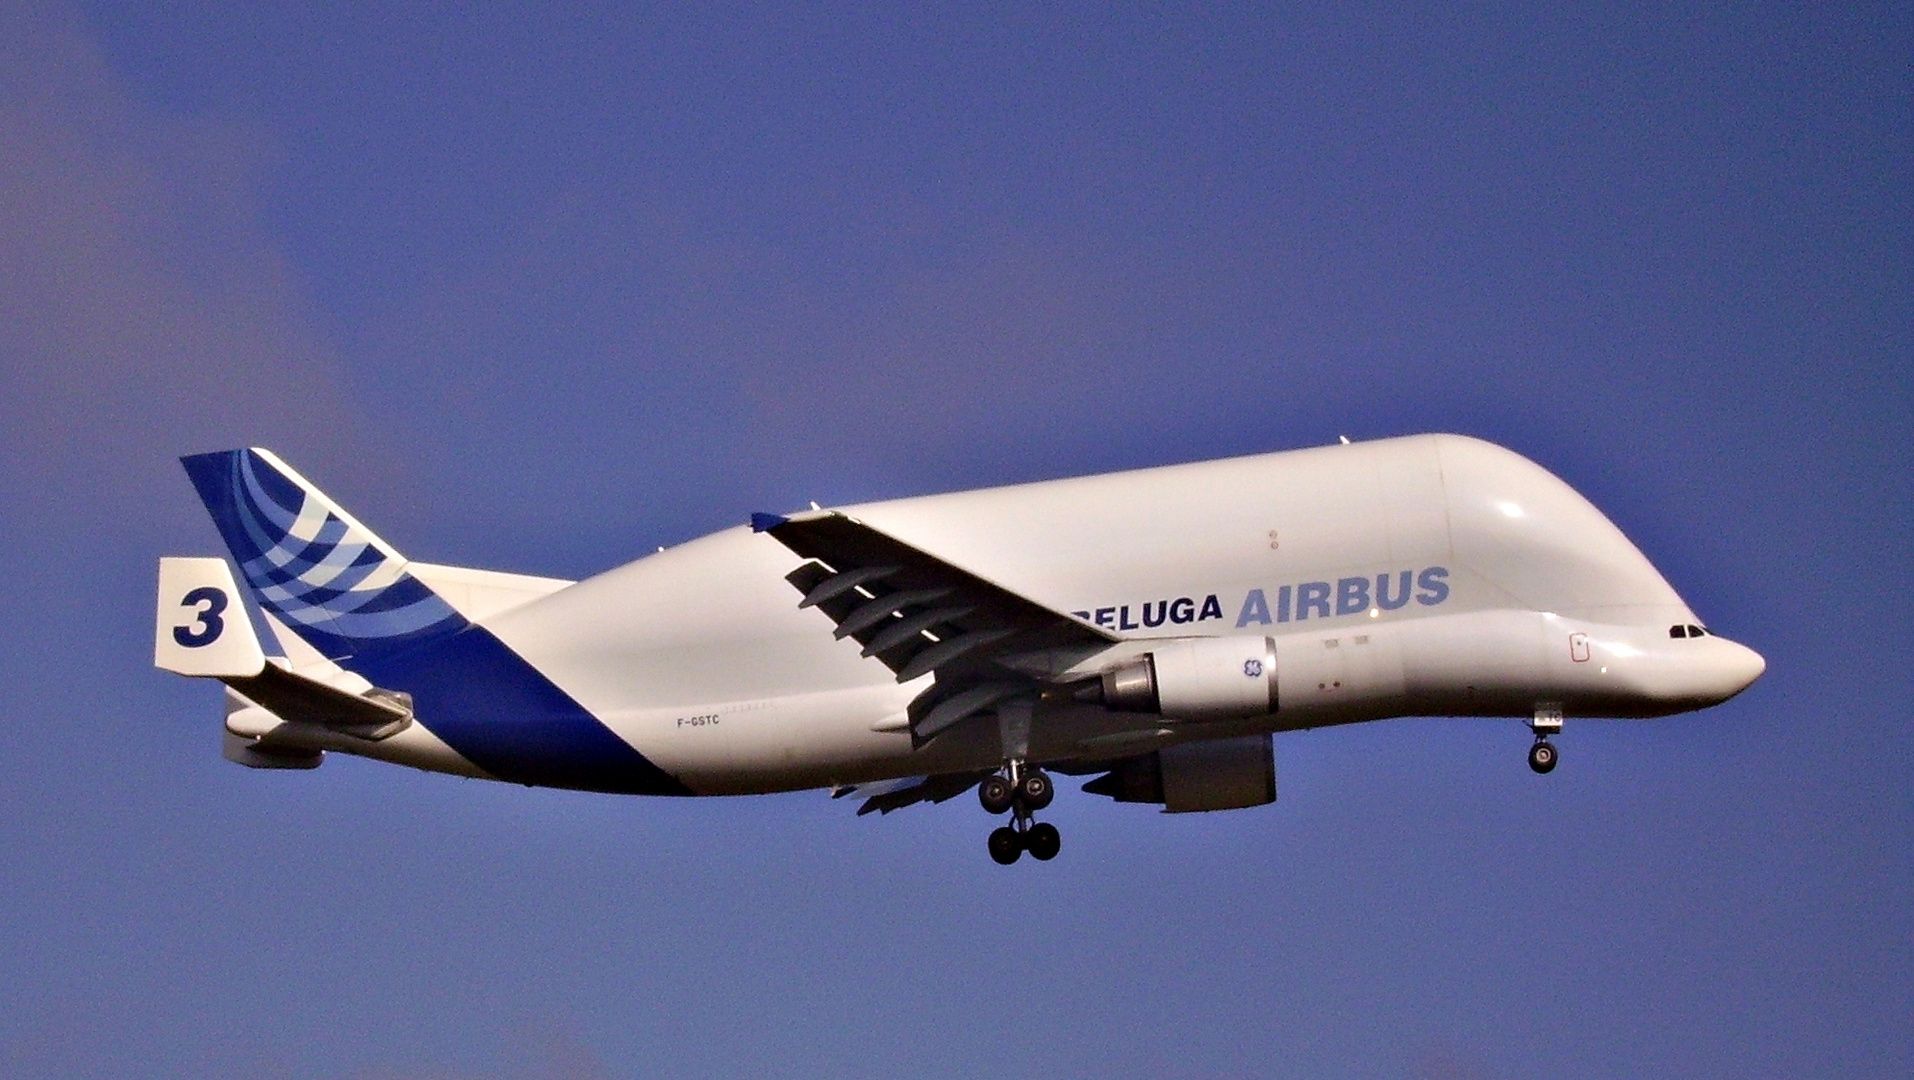 Beluga - Airbus A300-600ST